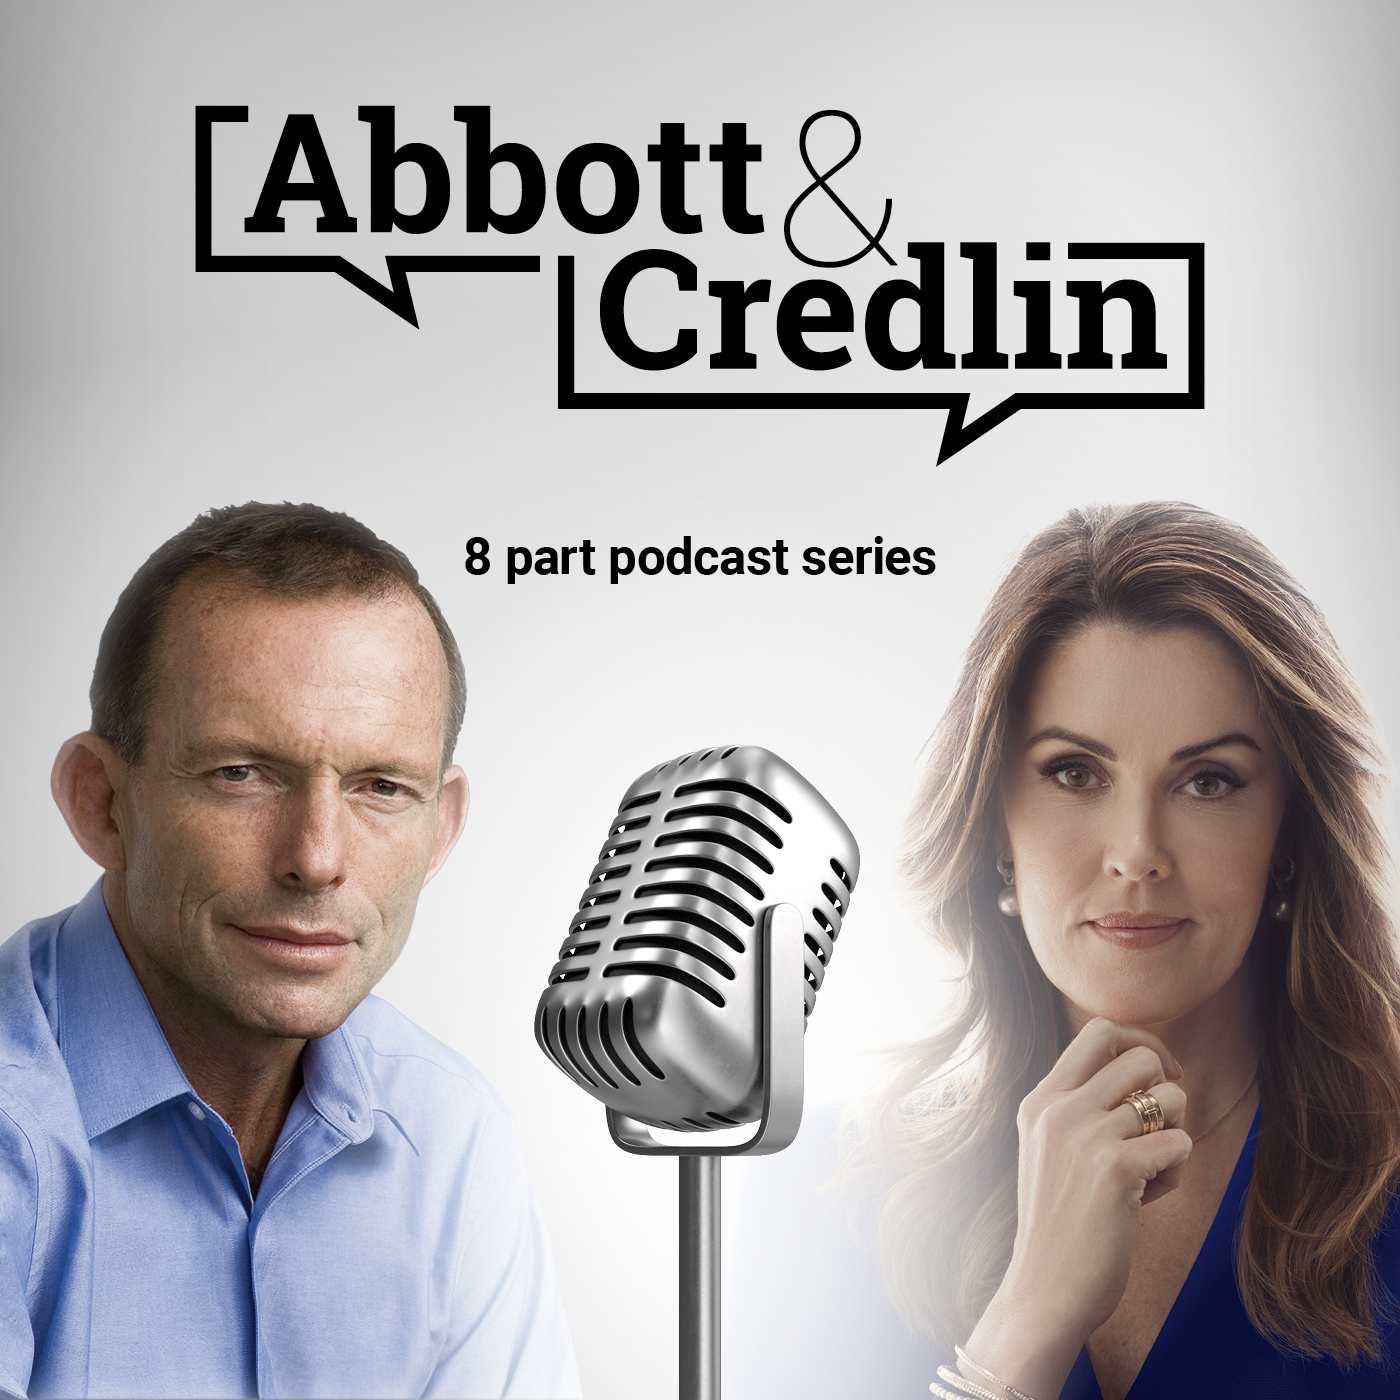 Abbott & Credlin | Episode 6